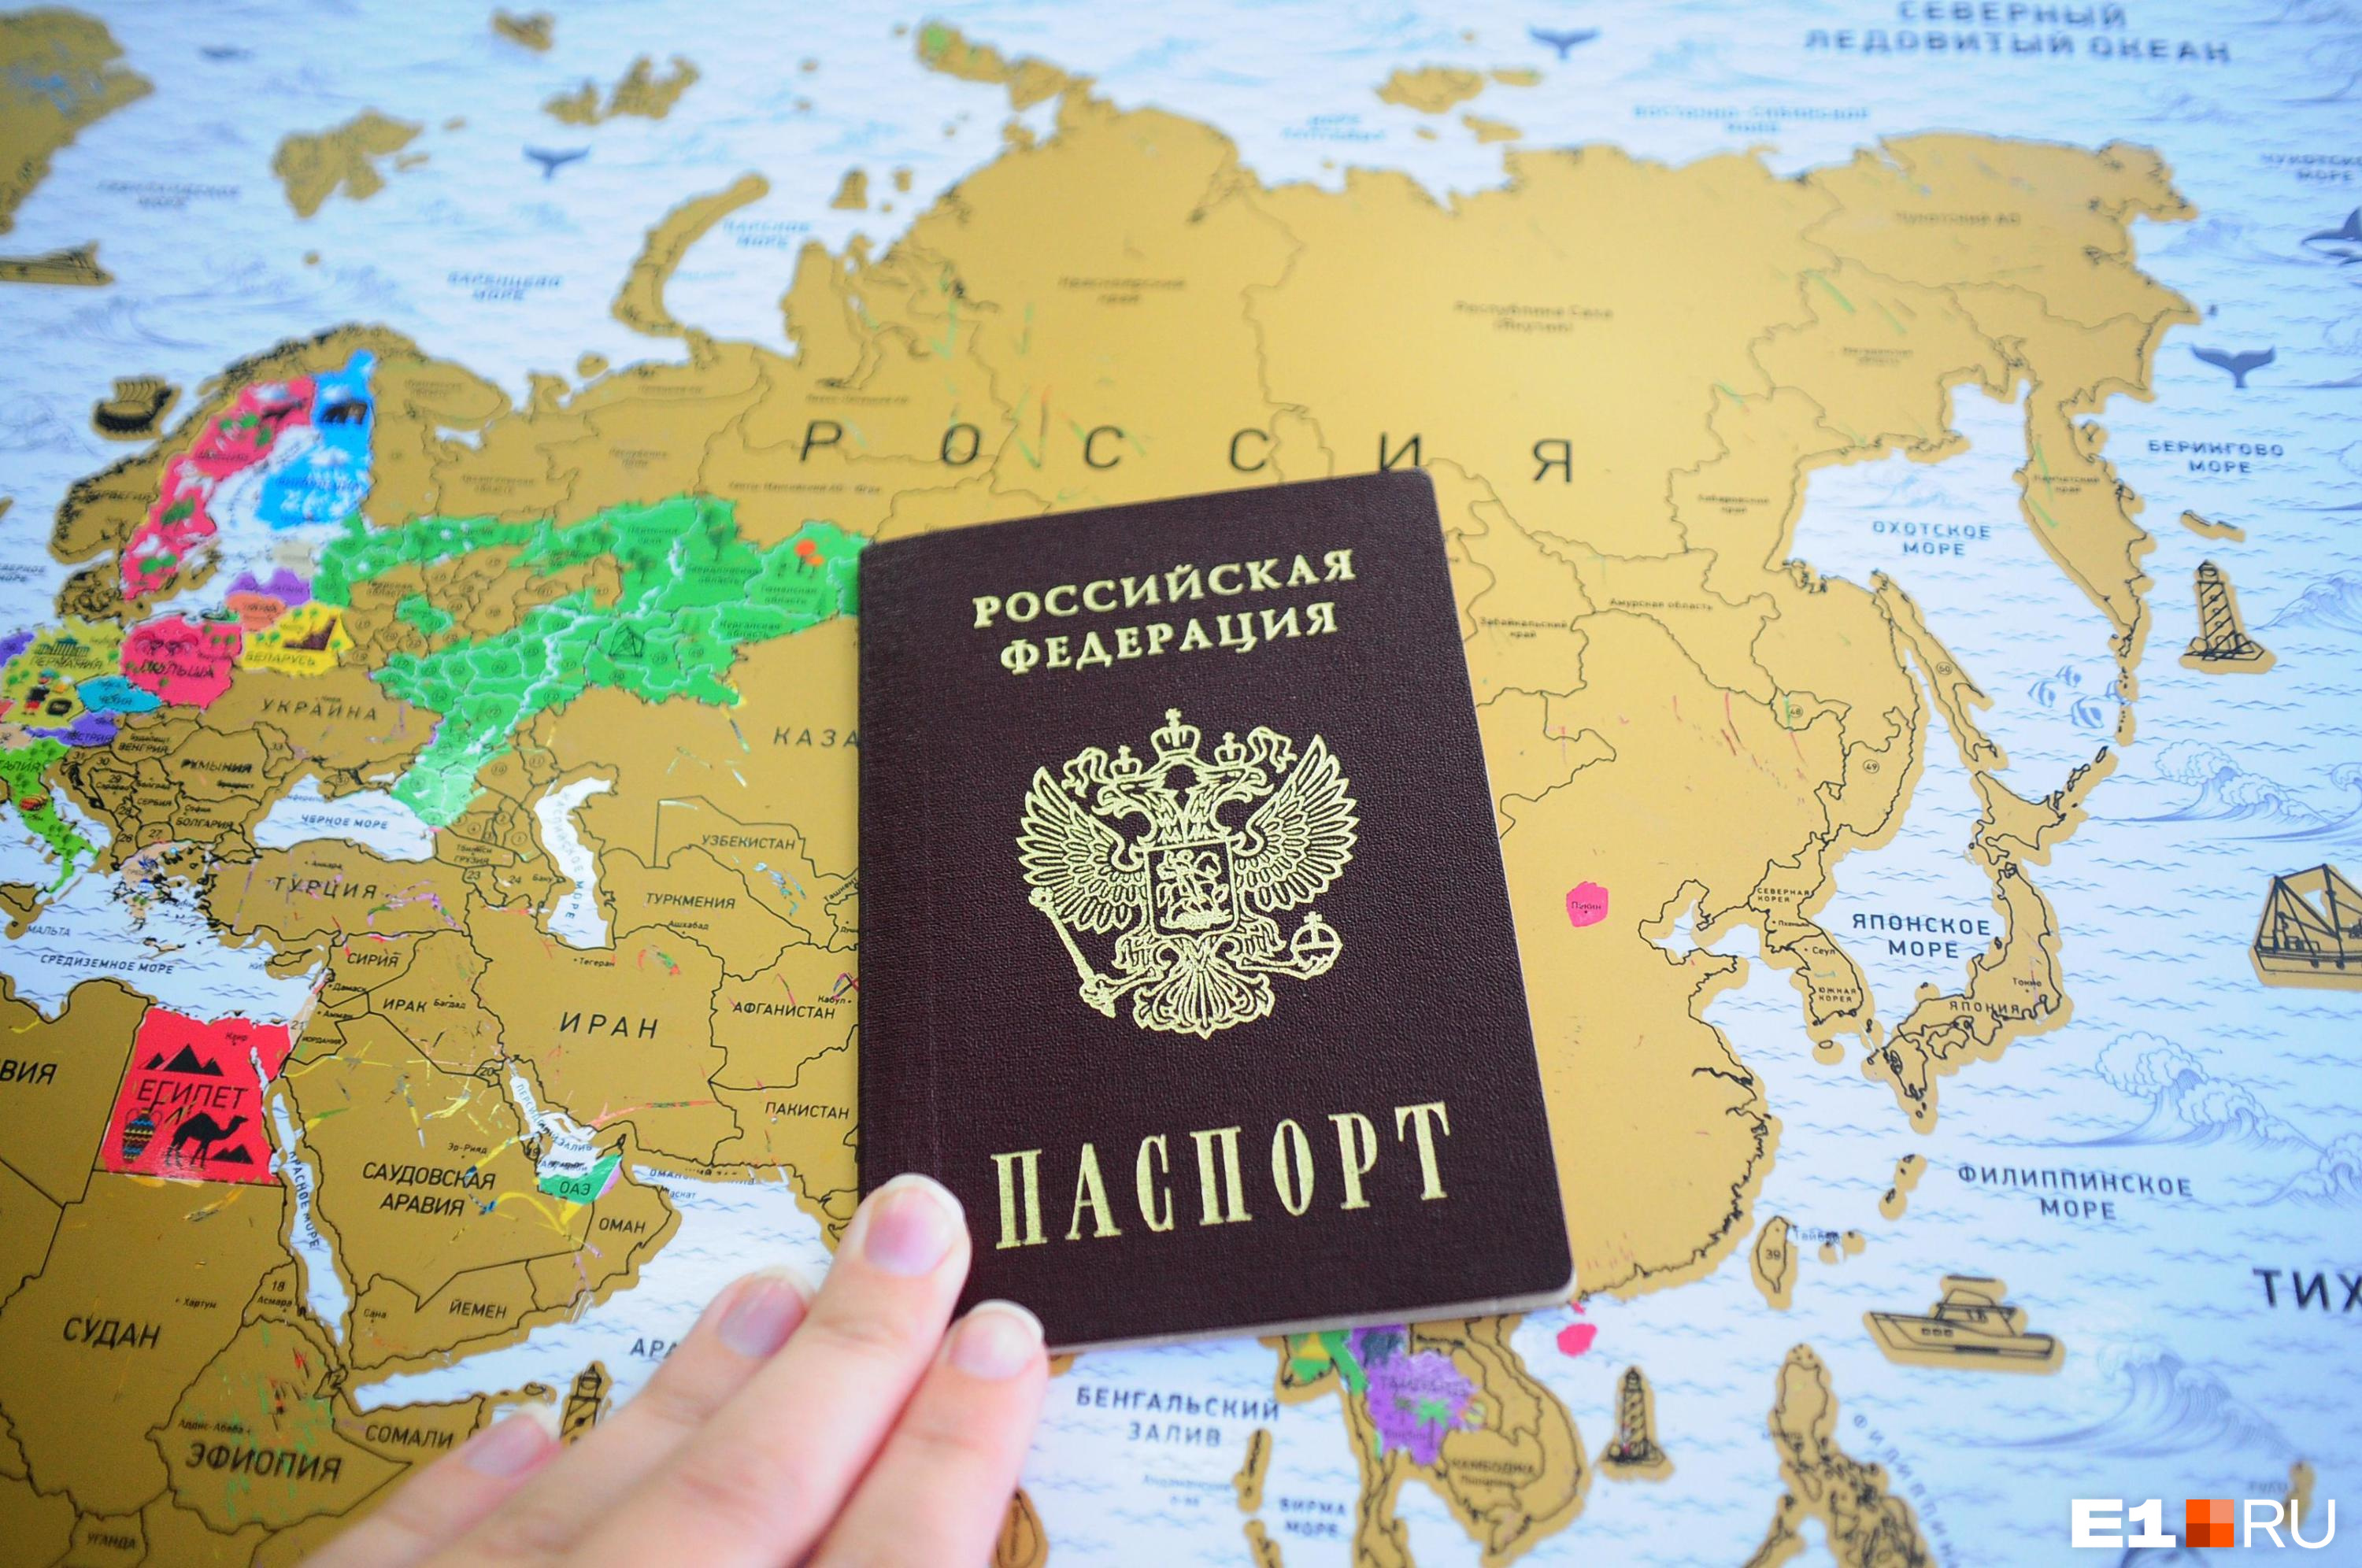 Срочно меняйте паспорта! Екатеринбурженку задержали в аэропорту из-за того, что она родилась в Свердловске